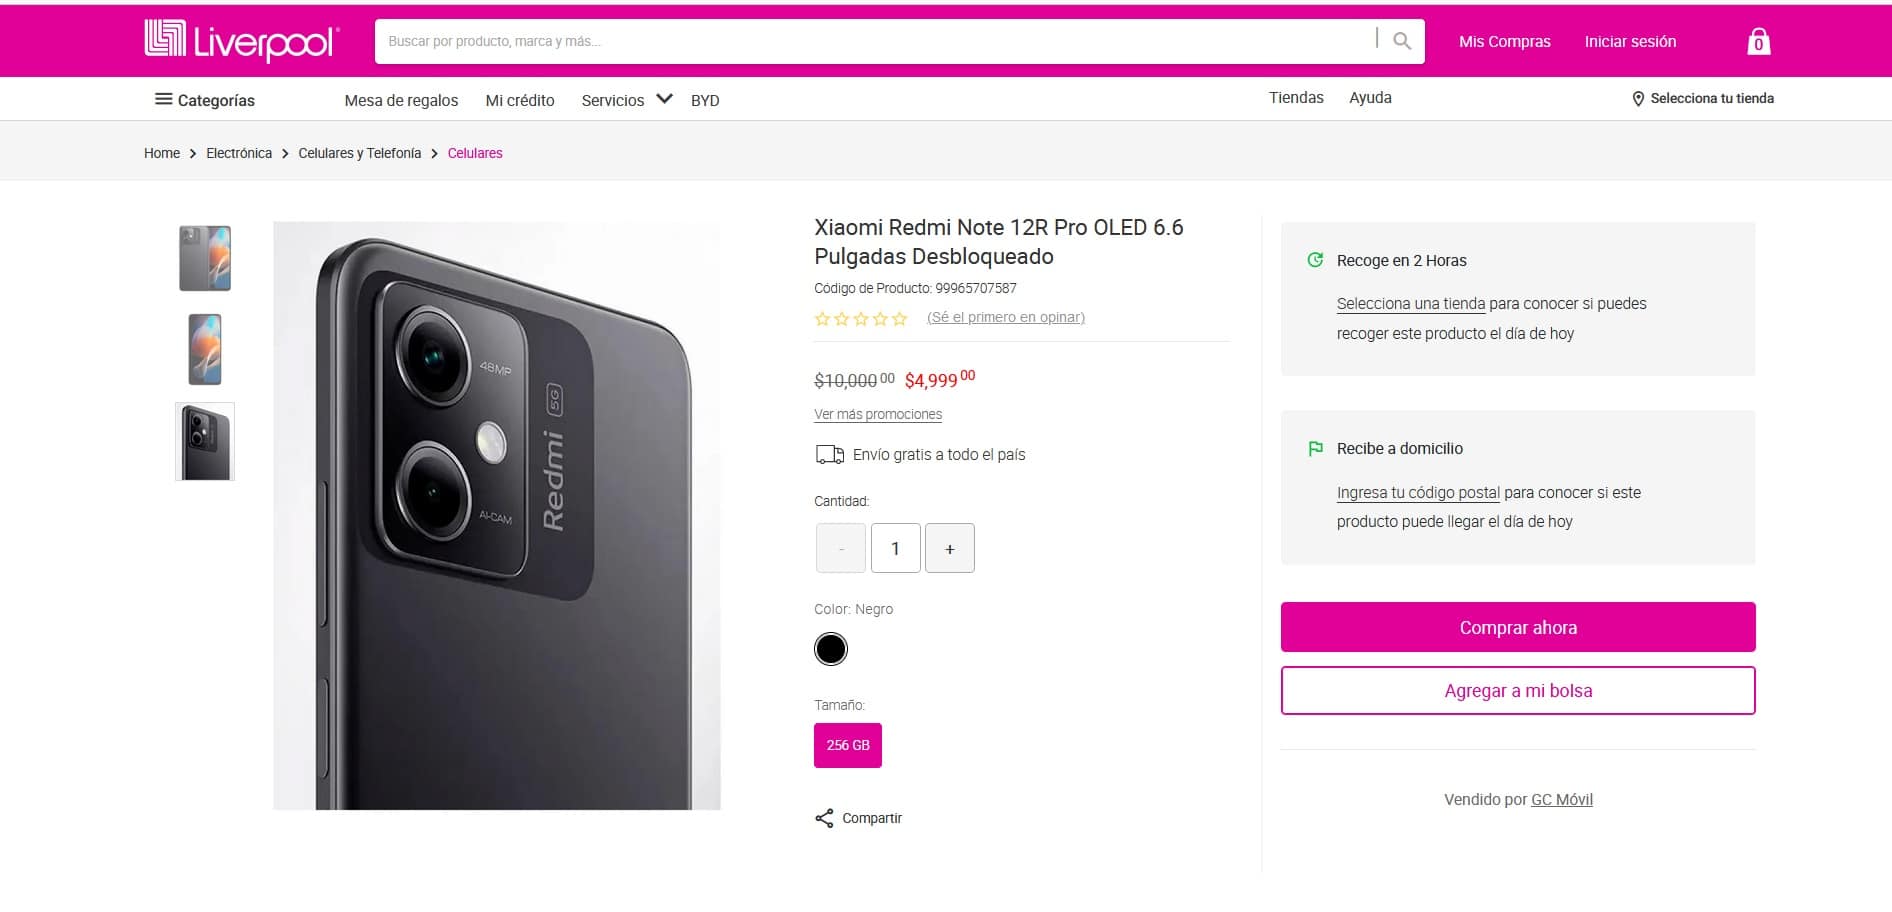 Smartphone Xiaomi Note 12r Pro características y su precio